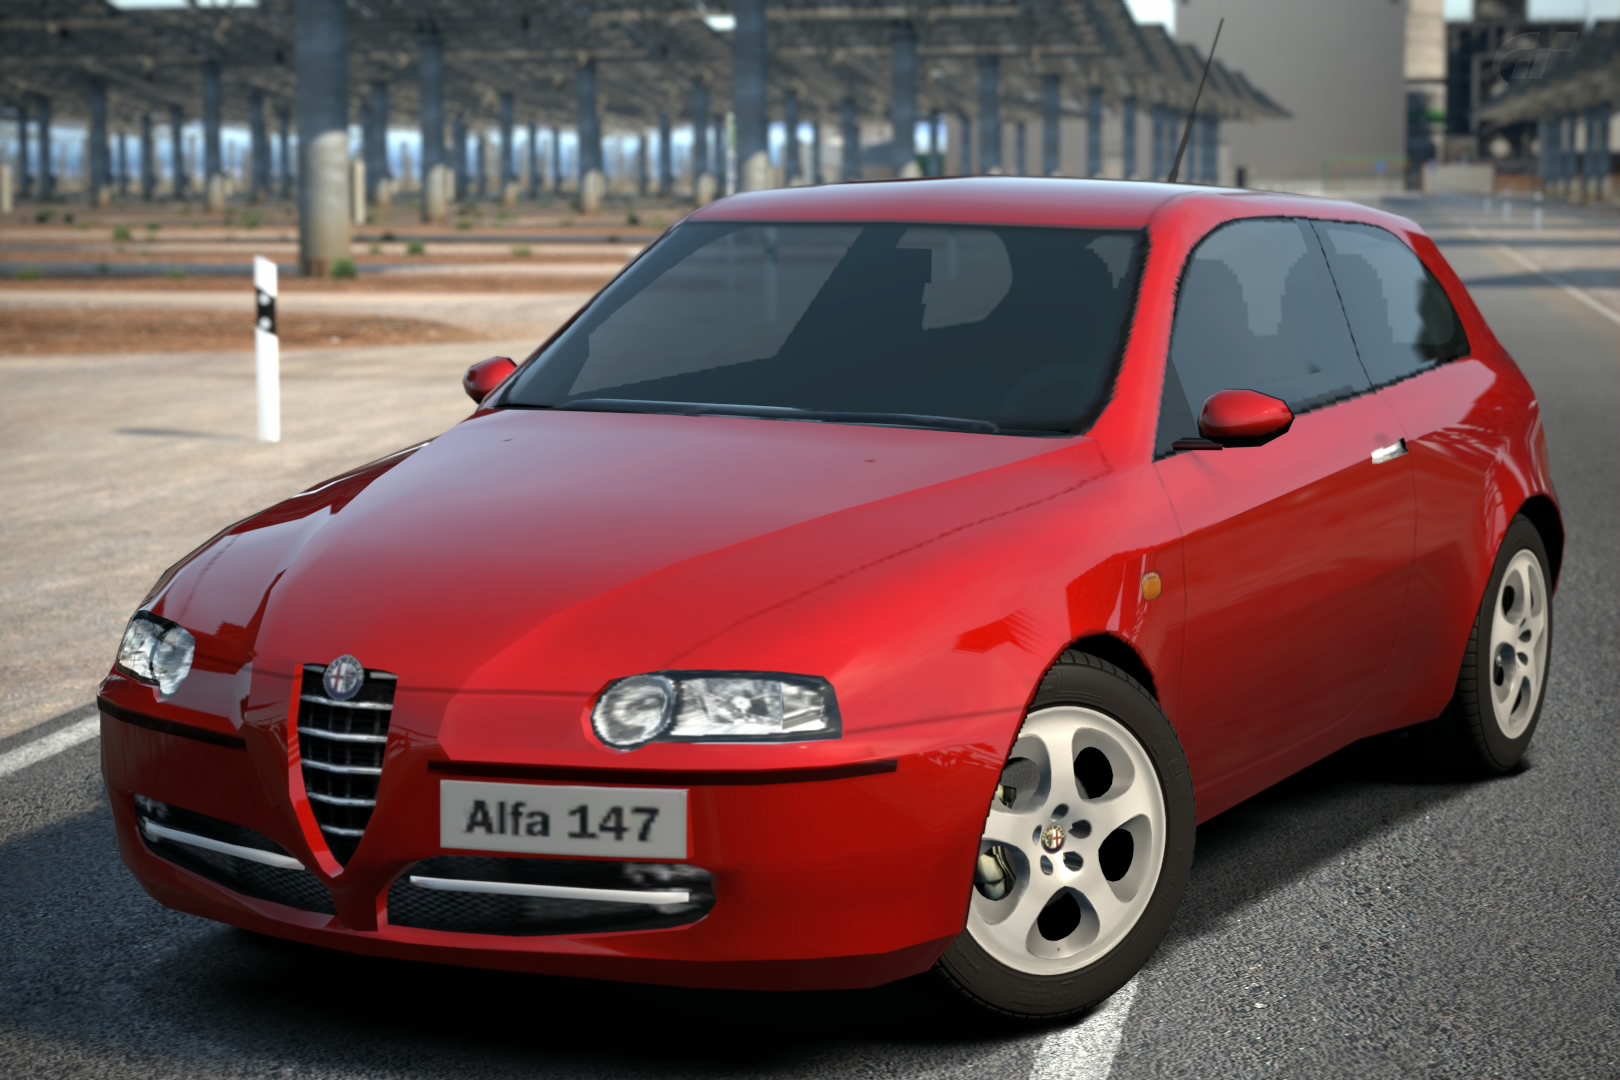 Alfa Romeo 147 2 0 Twin Spark 02 Gran Turismo Wiki Fandom